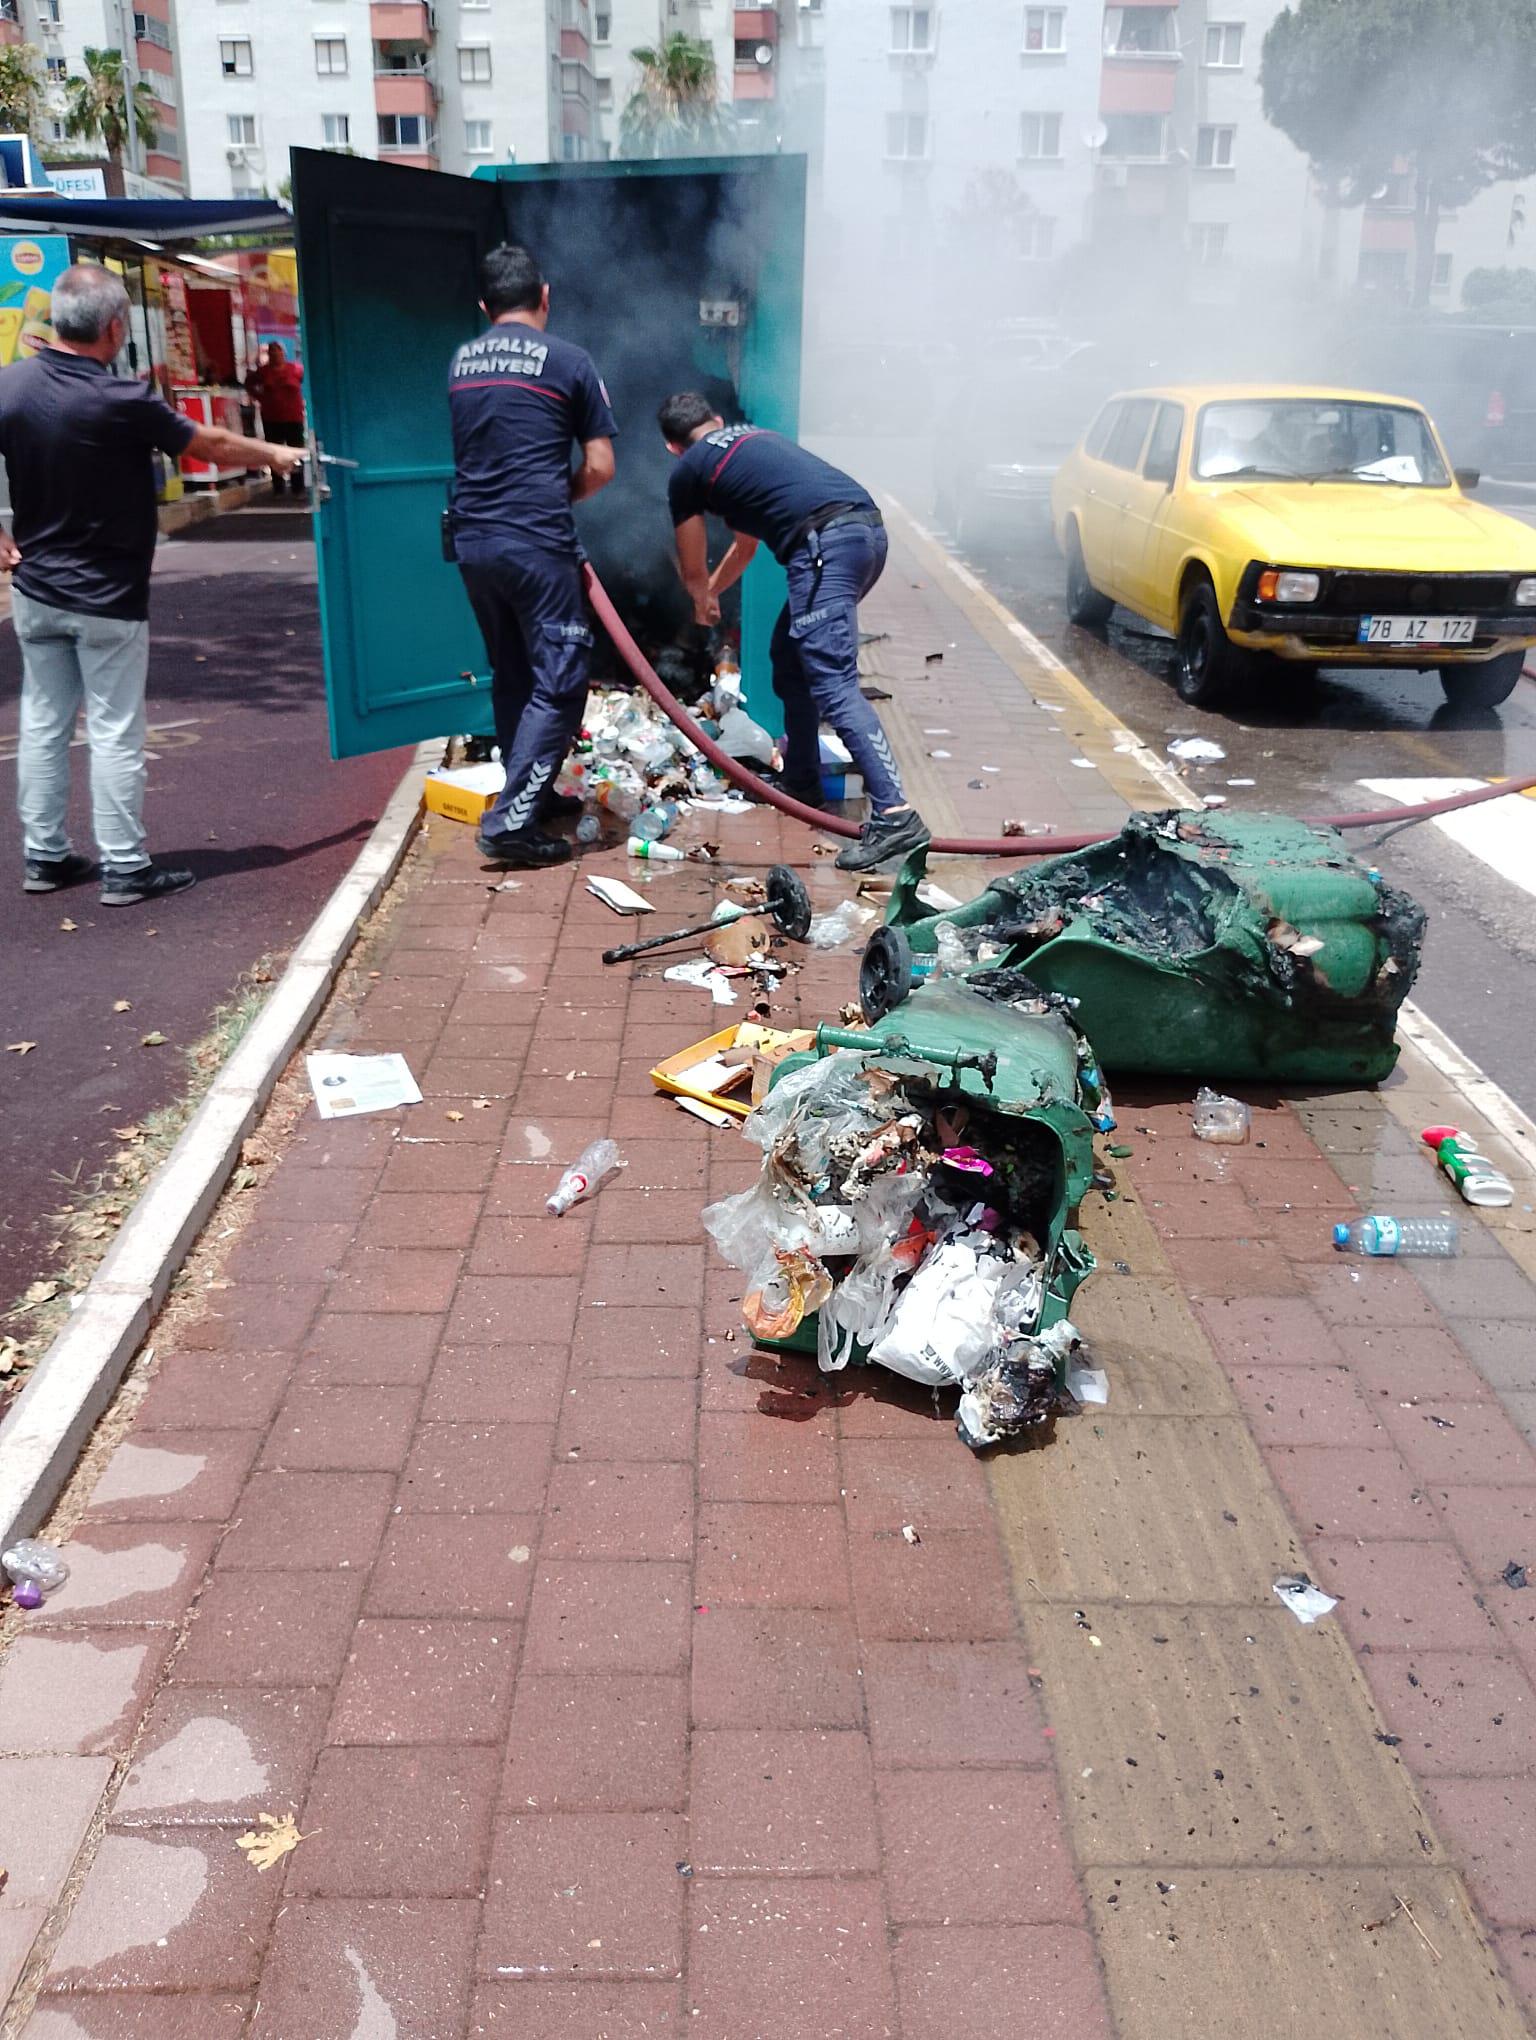 Kepez Belediyesi Mobil Atık Getirme Merkezlerini yeniledi